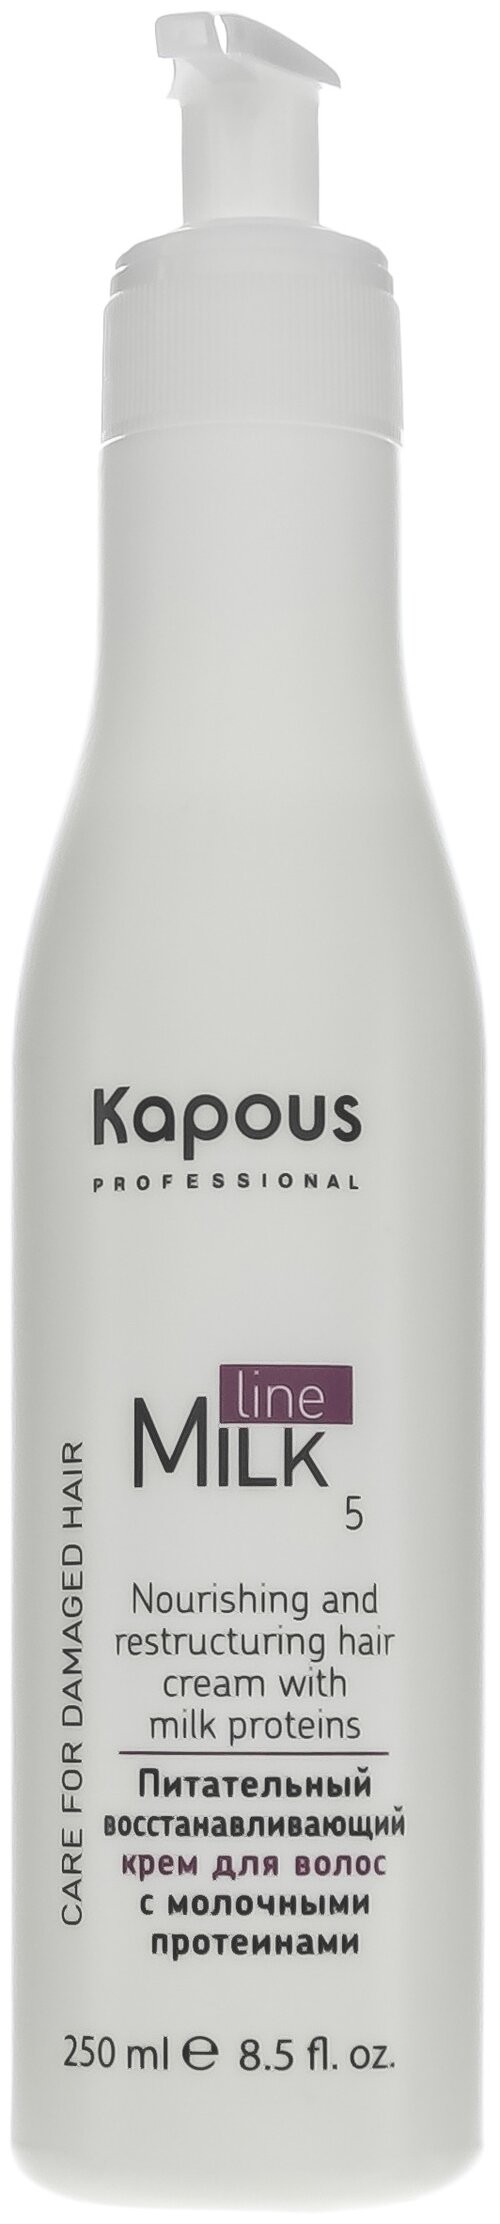 Kapous Milk Line Крем питательный восстанавливающий для волос с молочными протеинами шаг 5, 250 мл, бутылка